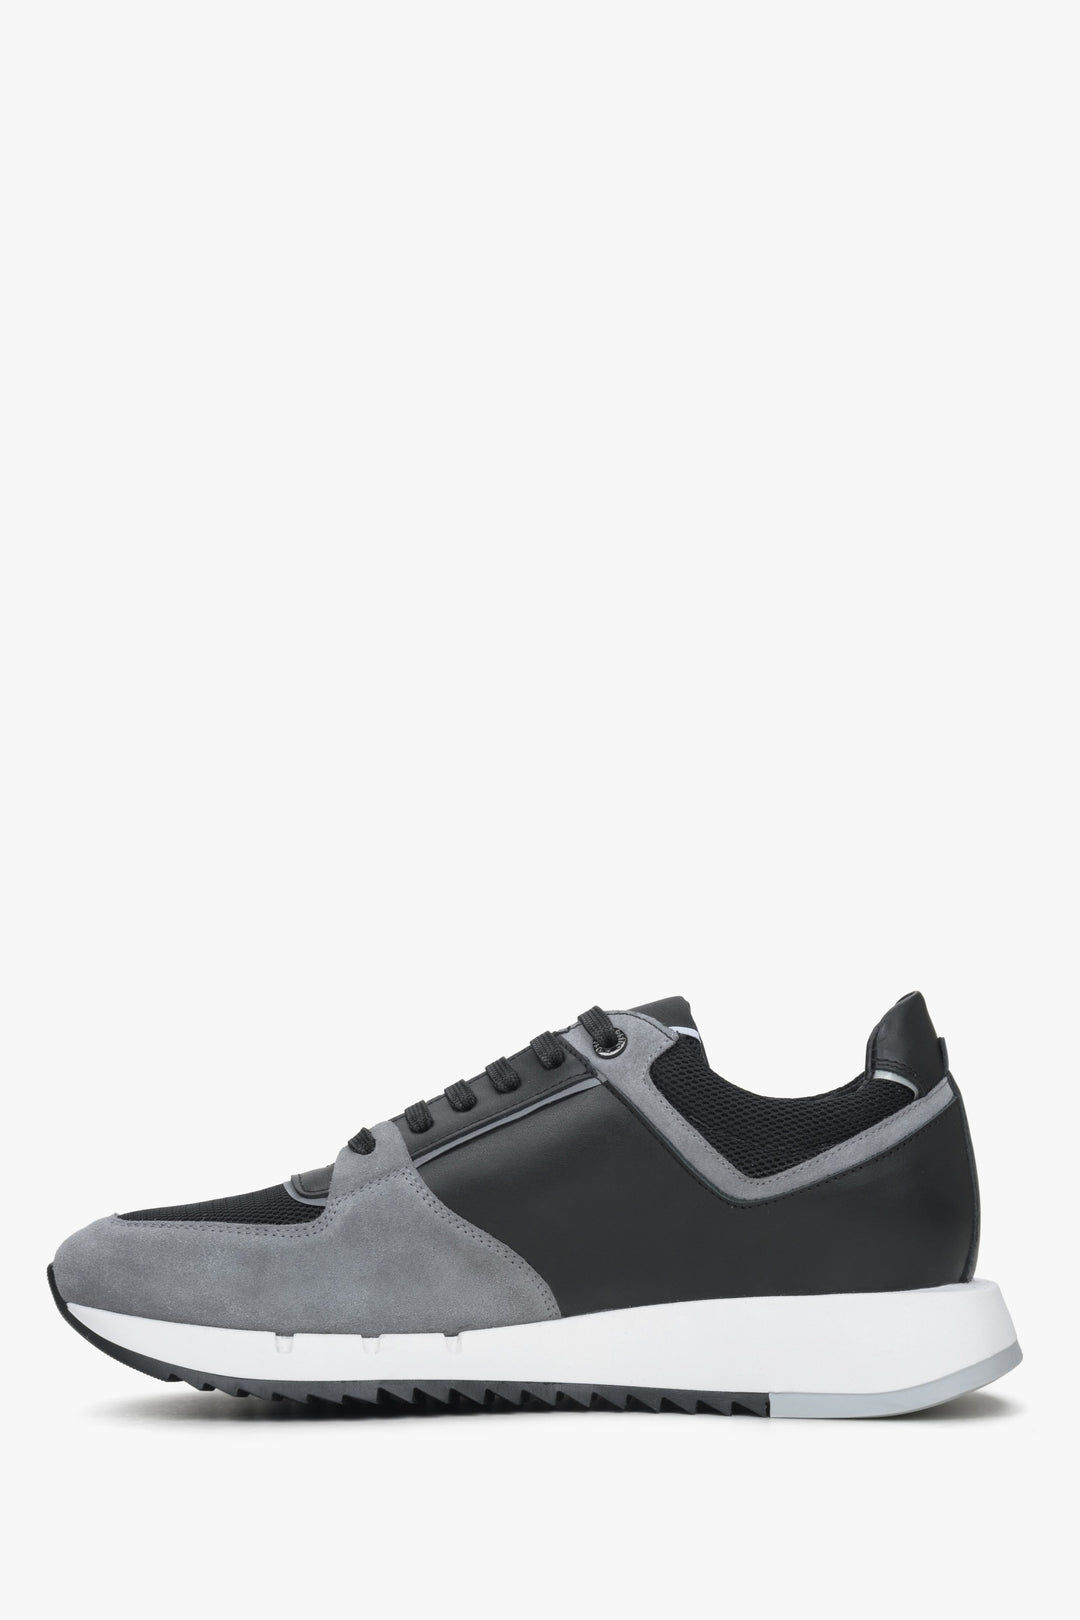 Comfortable men's black and grey sneakers by Estro - shoe profile.